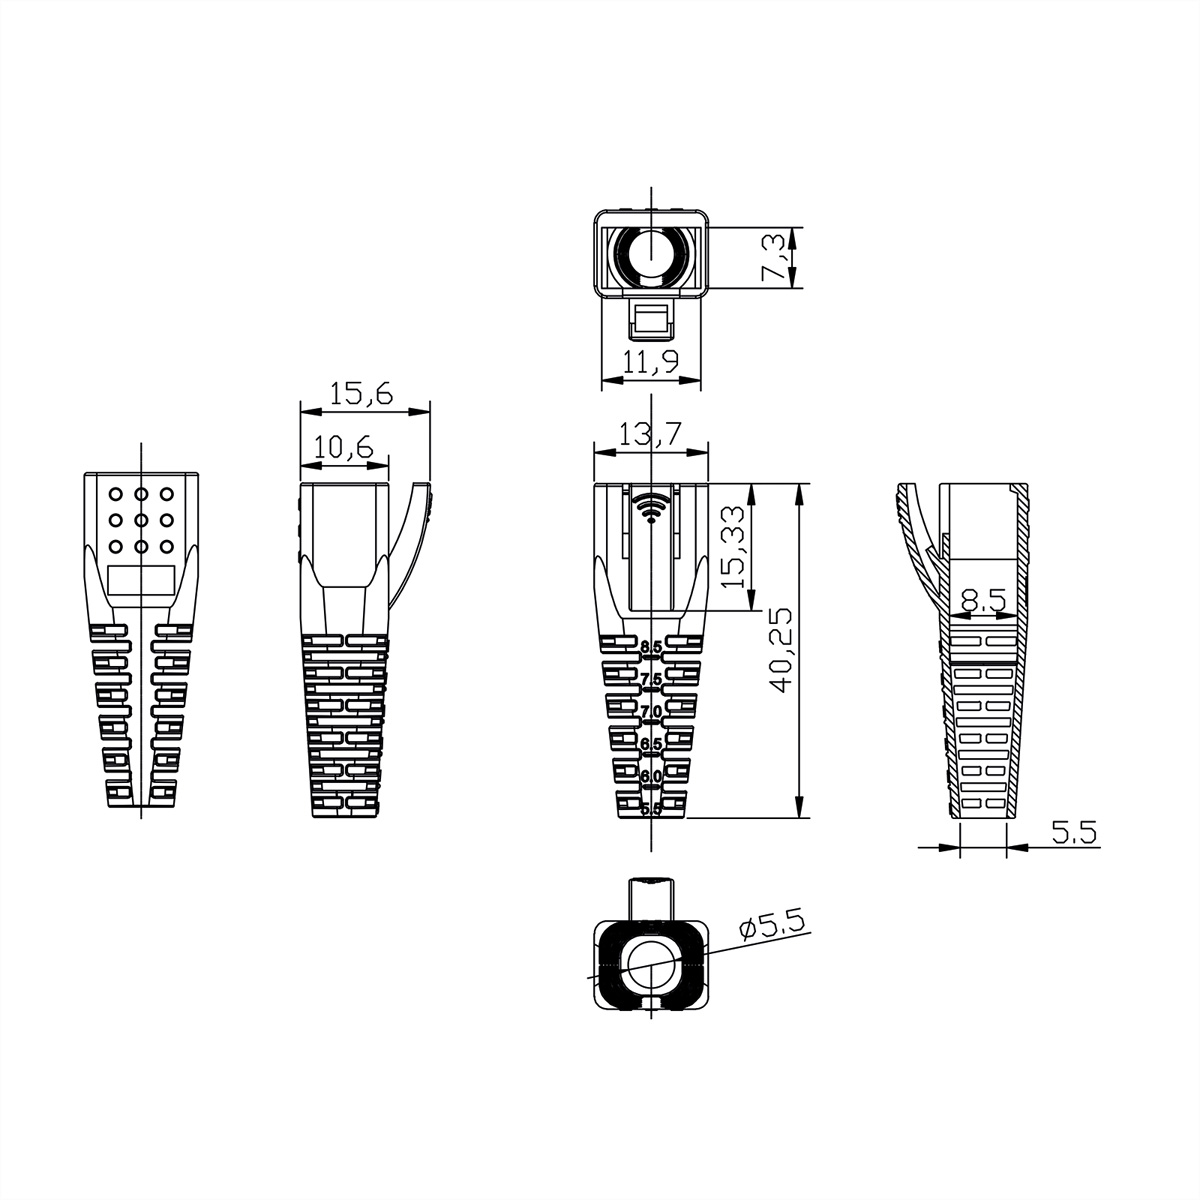 ROLINE Knickschutztülle für Modular Plugs Tüllen RJ-45 RJ-45 für